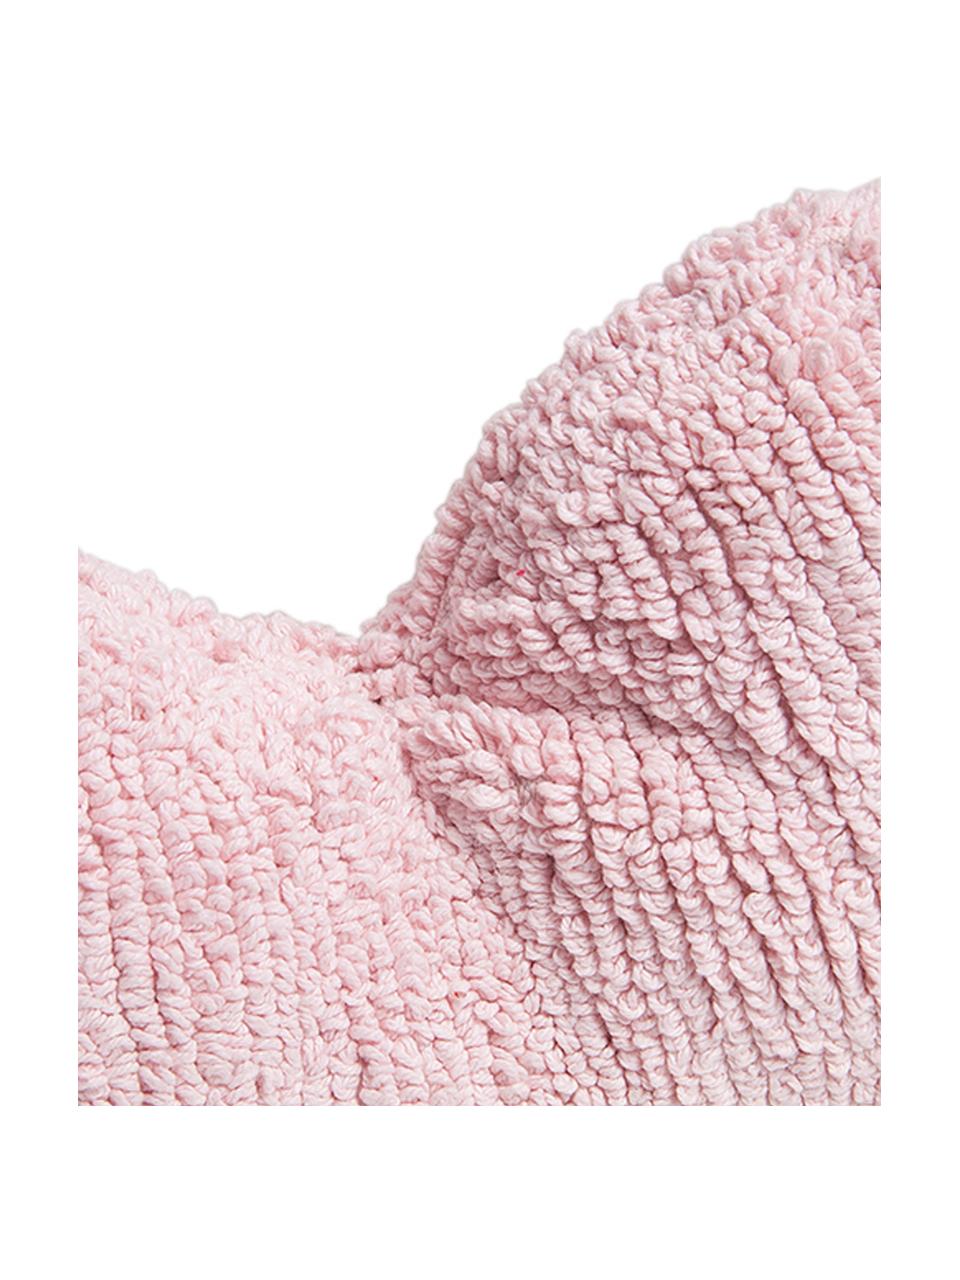 Herzförmiges Kissen Corazón in Rosa, mit Inlett, Bezug: 97% Baumwolle, 3% recycel, Hellrosa, 47 x 50 cm